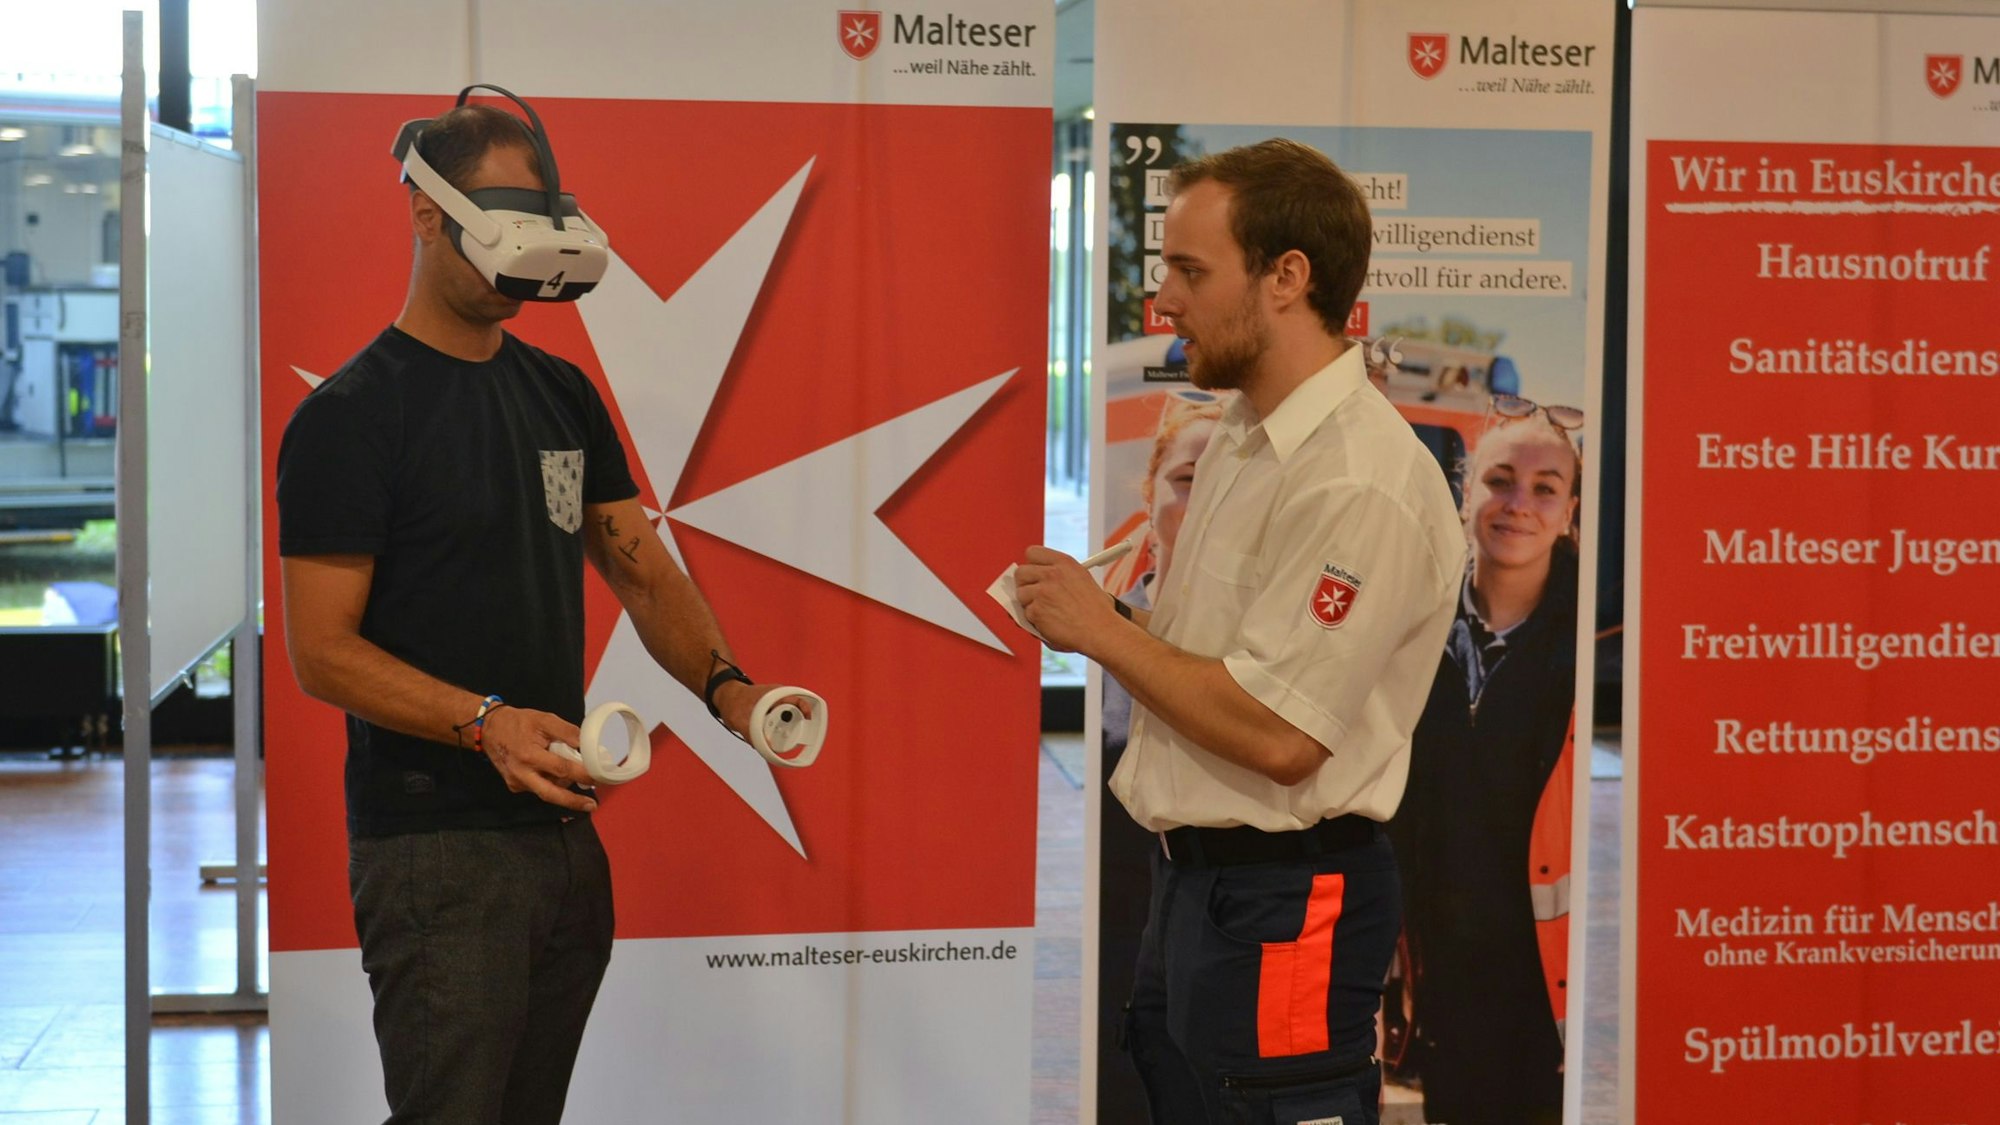 Das Bild zeigt einen Mann, wie er eine VR-Brille trägt. Dabei wird er von einem Experten der Malteser beraten.